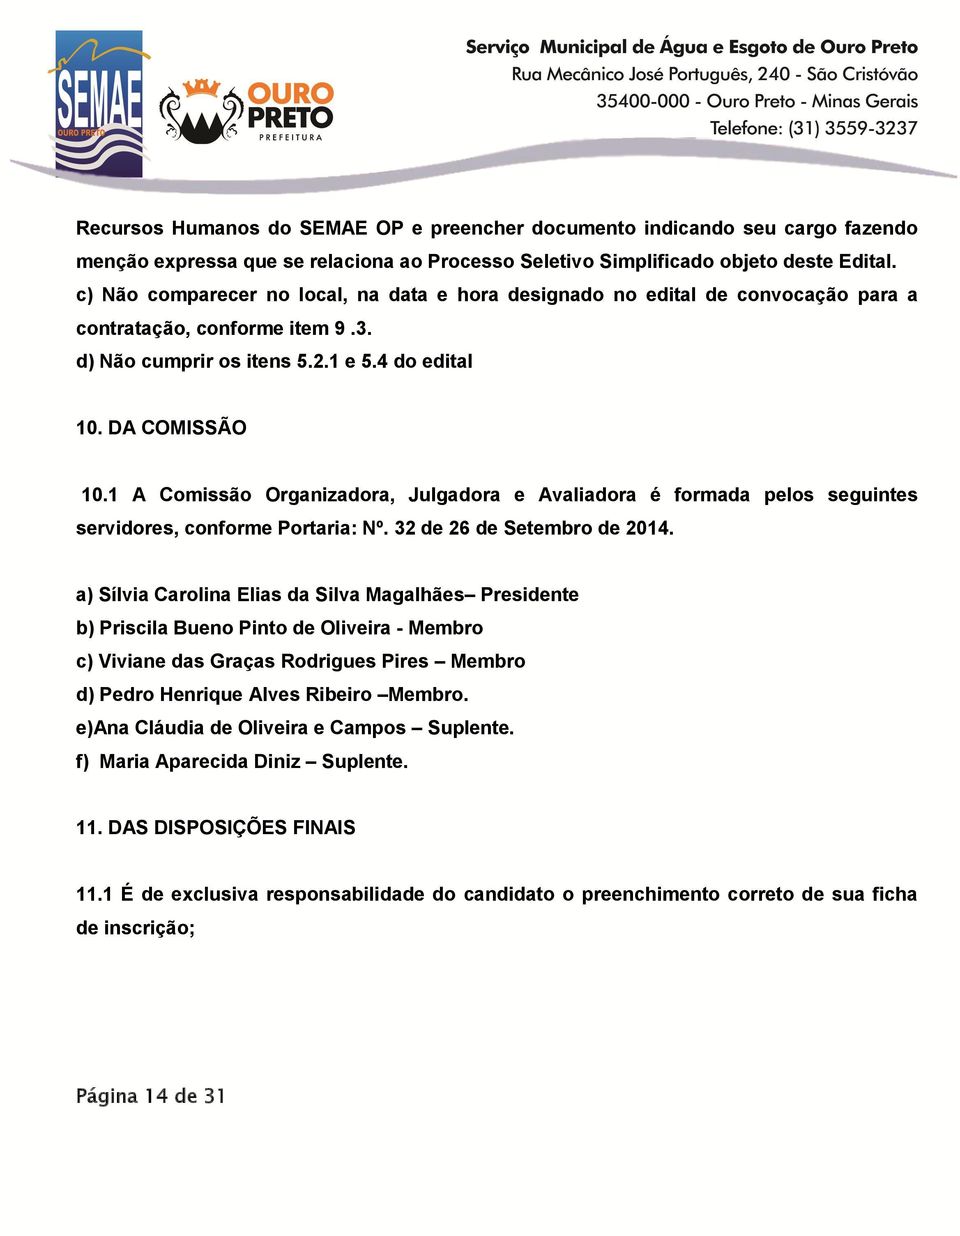 1 A Comissão Organizadora, Julgadora e Avaliadora é formada pelos seguintes servidores, conforme Portaria: Nº. 32 de 26 de Setembro de 2014.